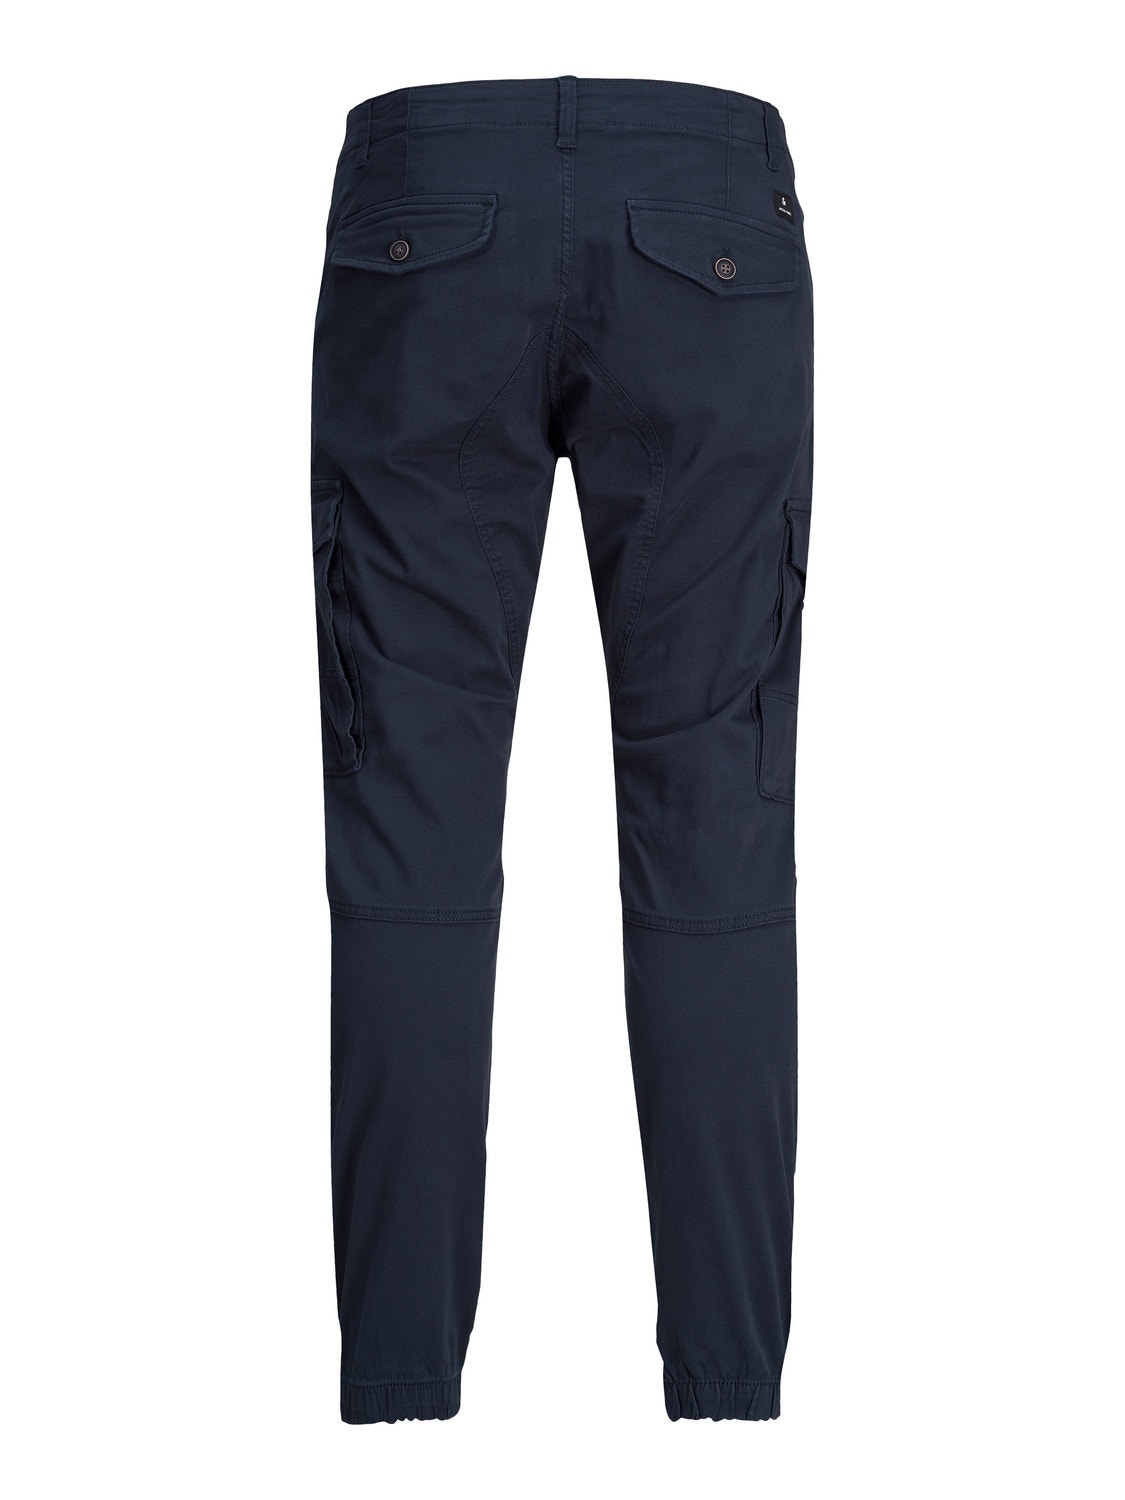 Jack & Jones Slim Fit Cargo kalhoty -Navy Blazer - 12169582